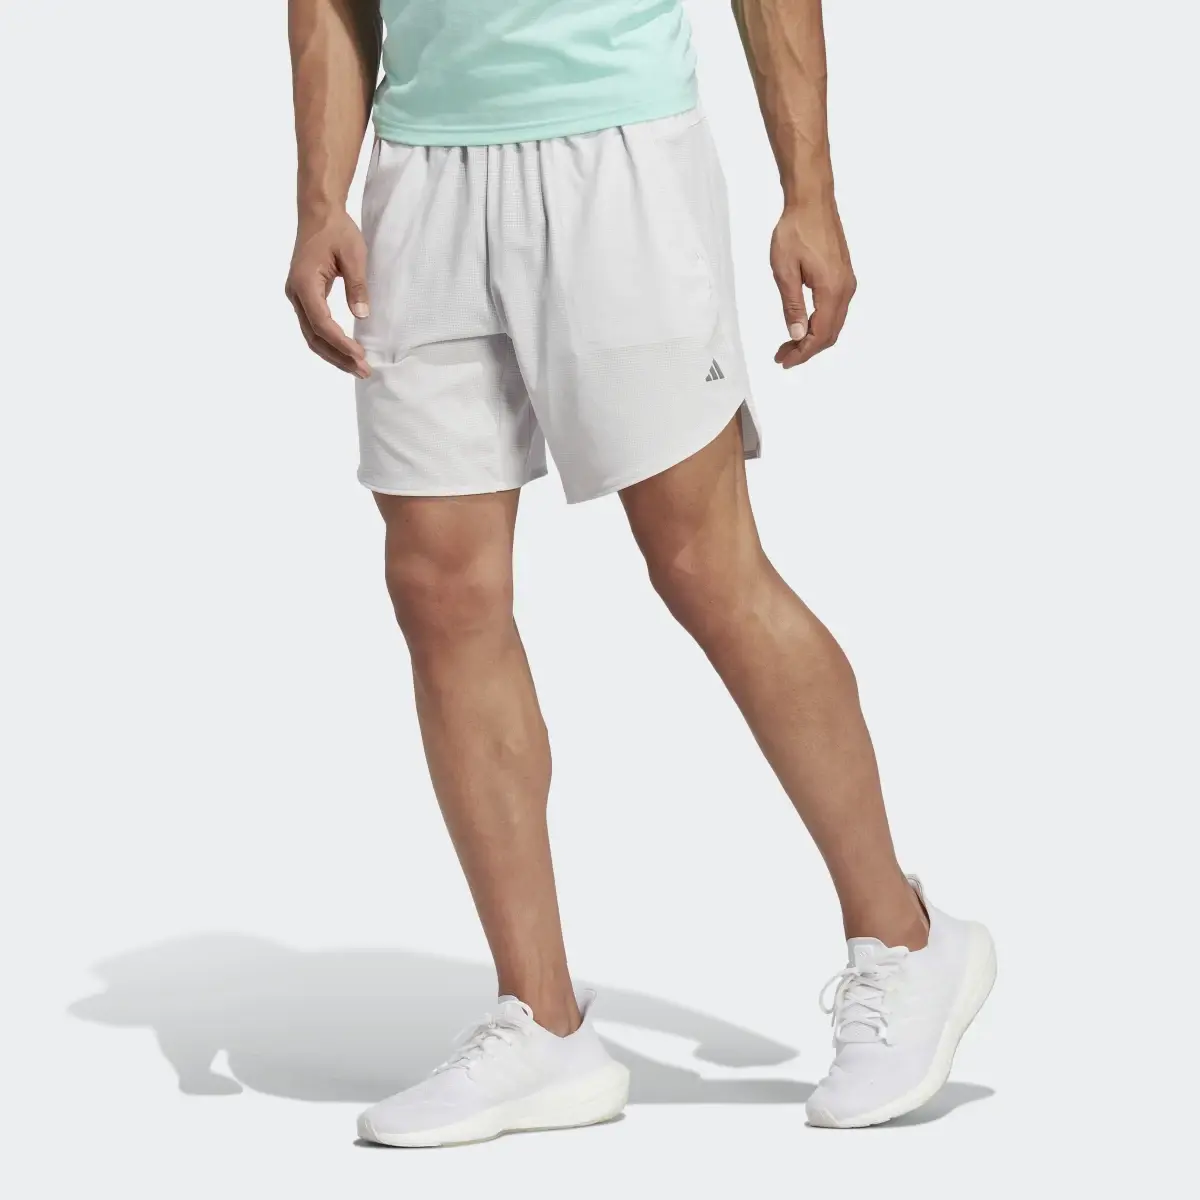 Adidas Designed for Training HIIT Training Shorts. 1